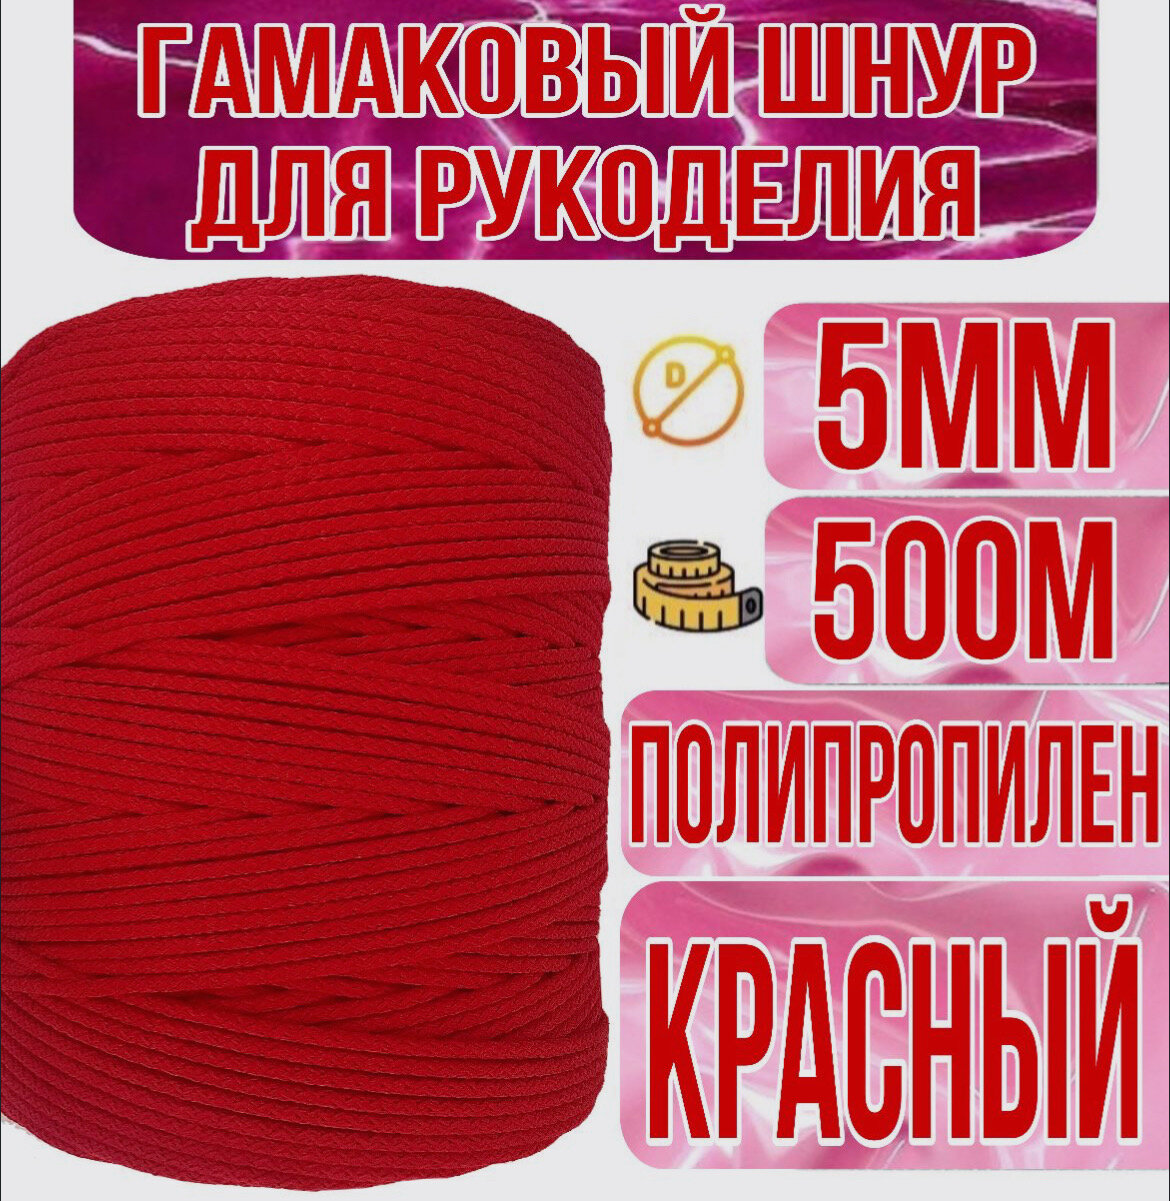 Гамаковый шнур 5мм со статическим сердечником / 500м, Красный